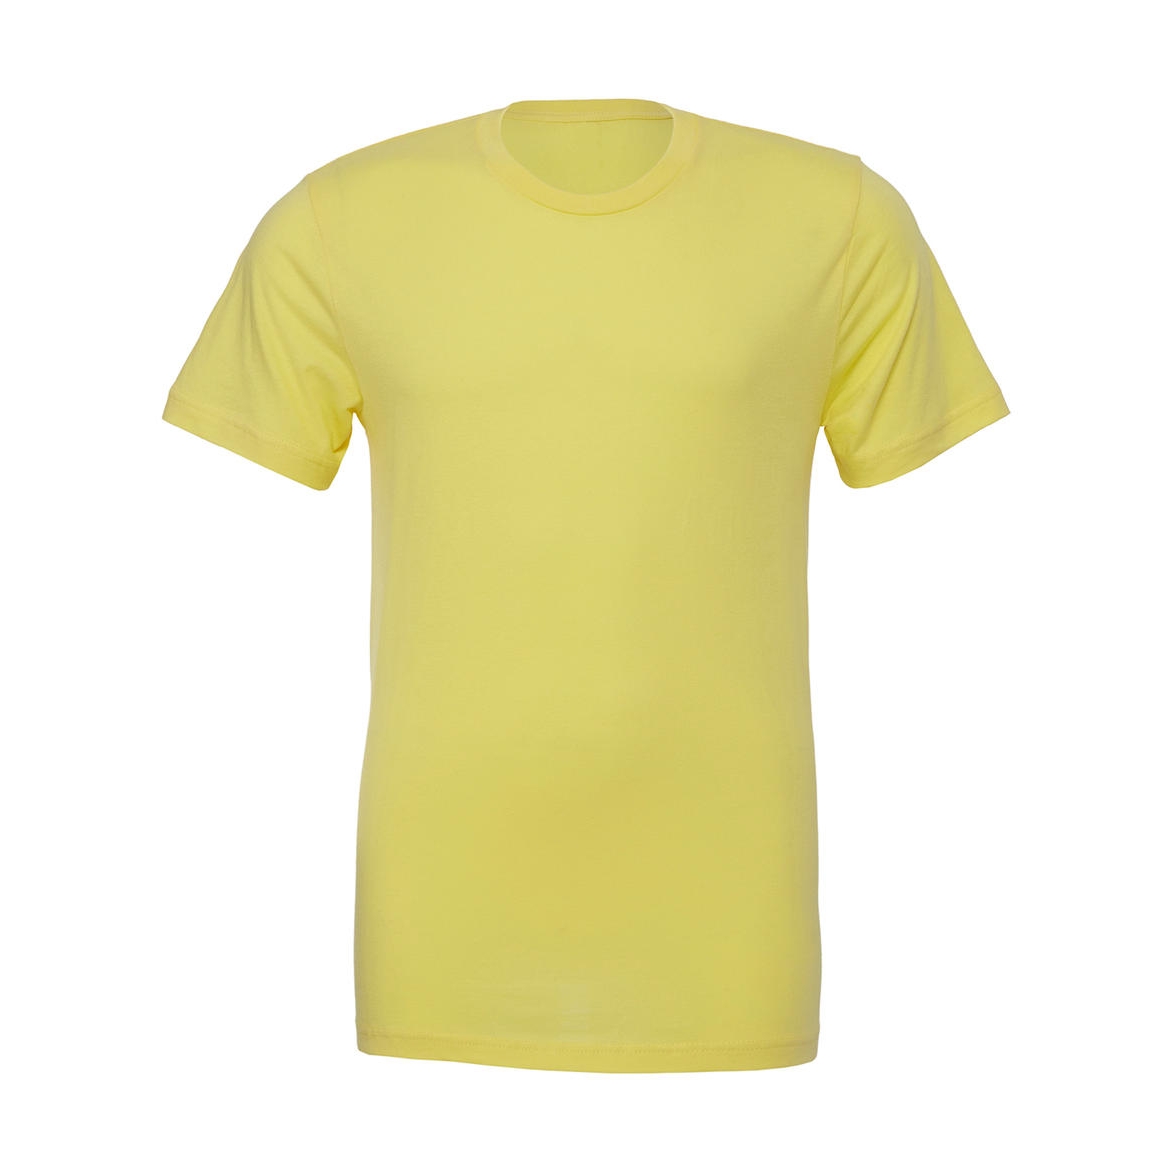 Tričko Bella Jersey - žluté, XL